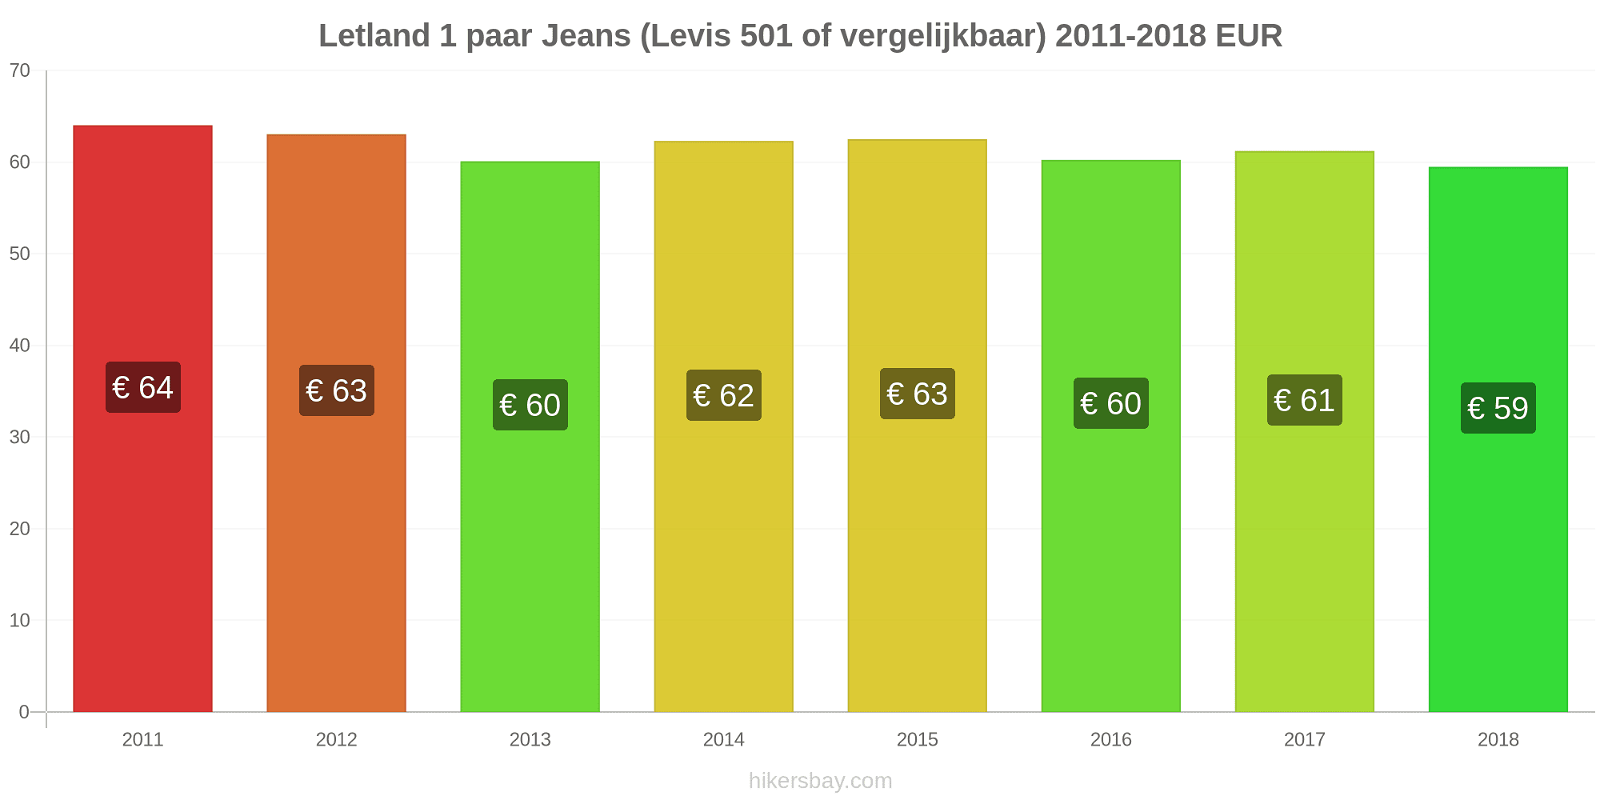 Letland prijswijzigingen 1 paar jeans (Levis 501 of vergelijkbaar) hikersbay.com